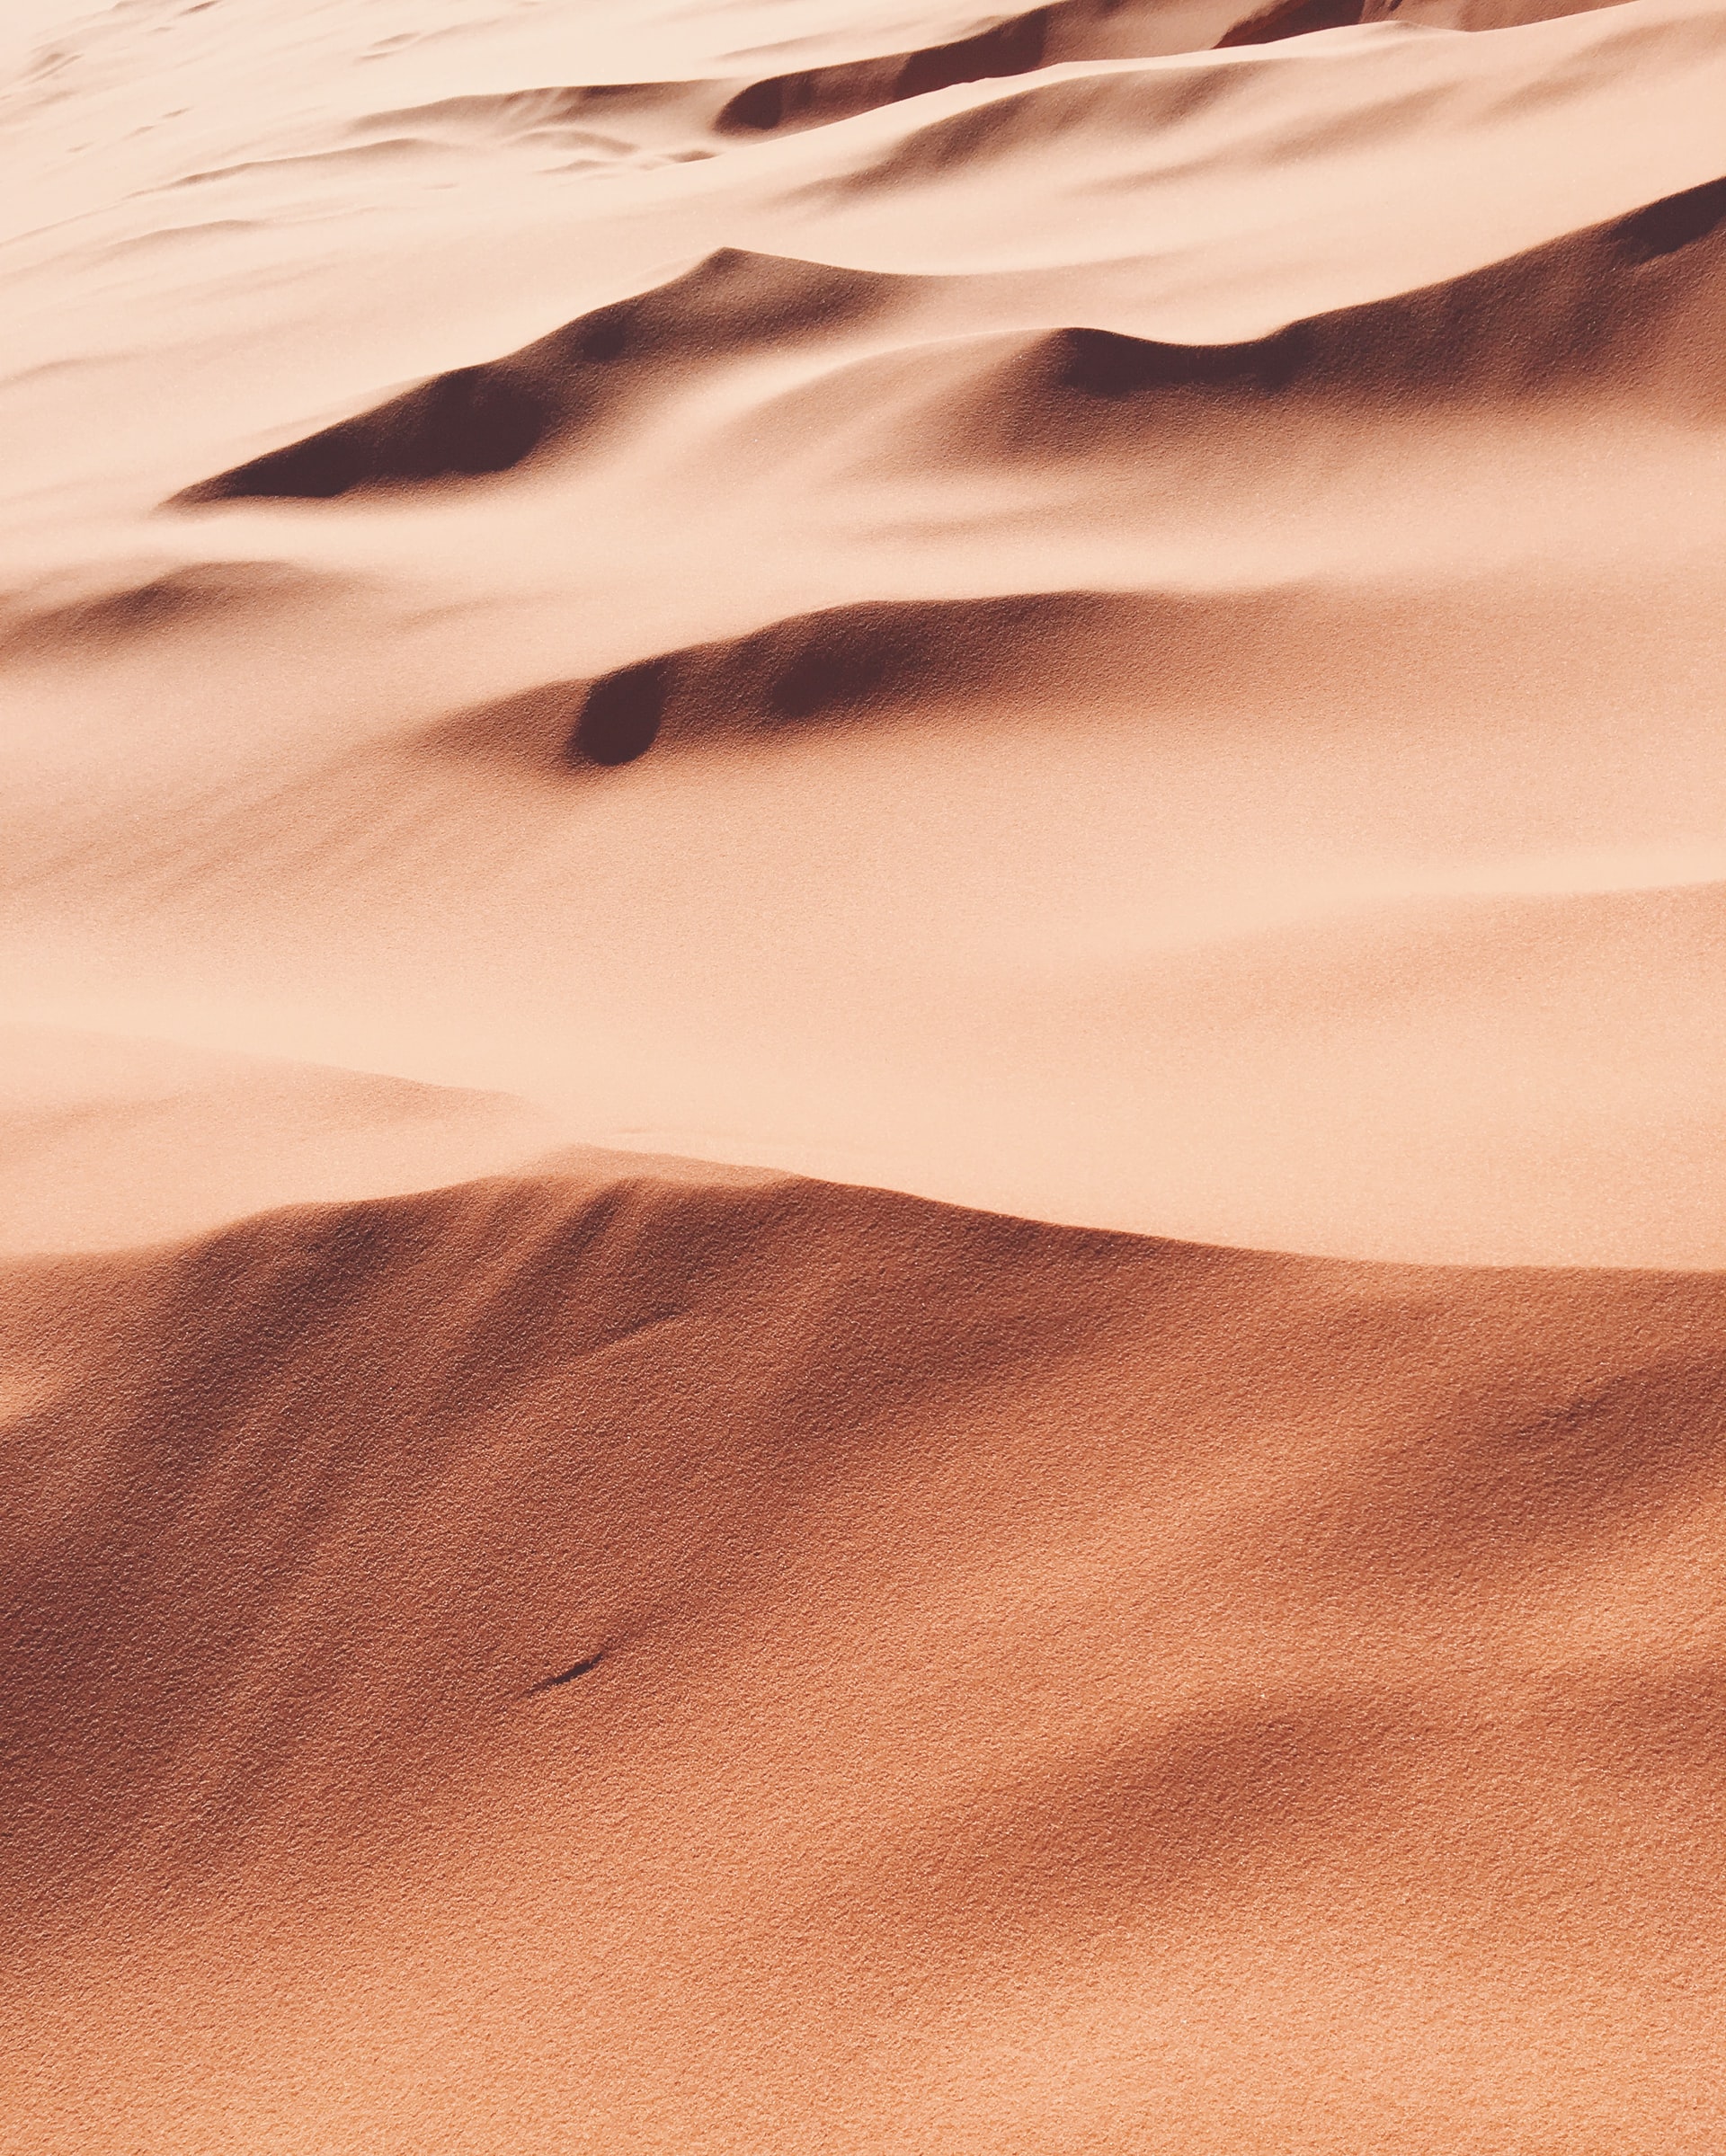 DAO hará público el manuscrito de Dune de Jodorowsky: miembro ganó una oferta de $ 3 millones